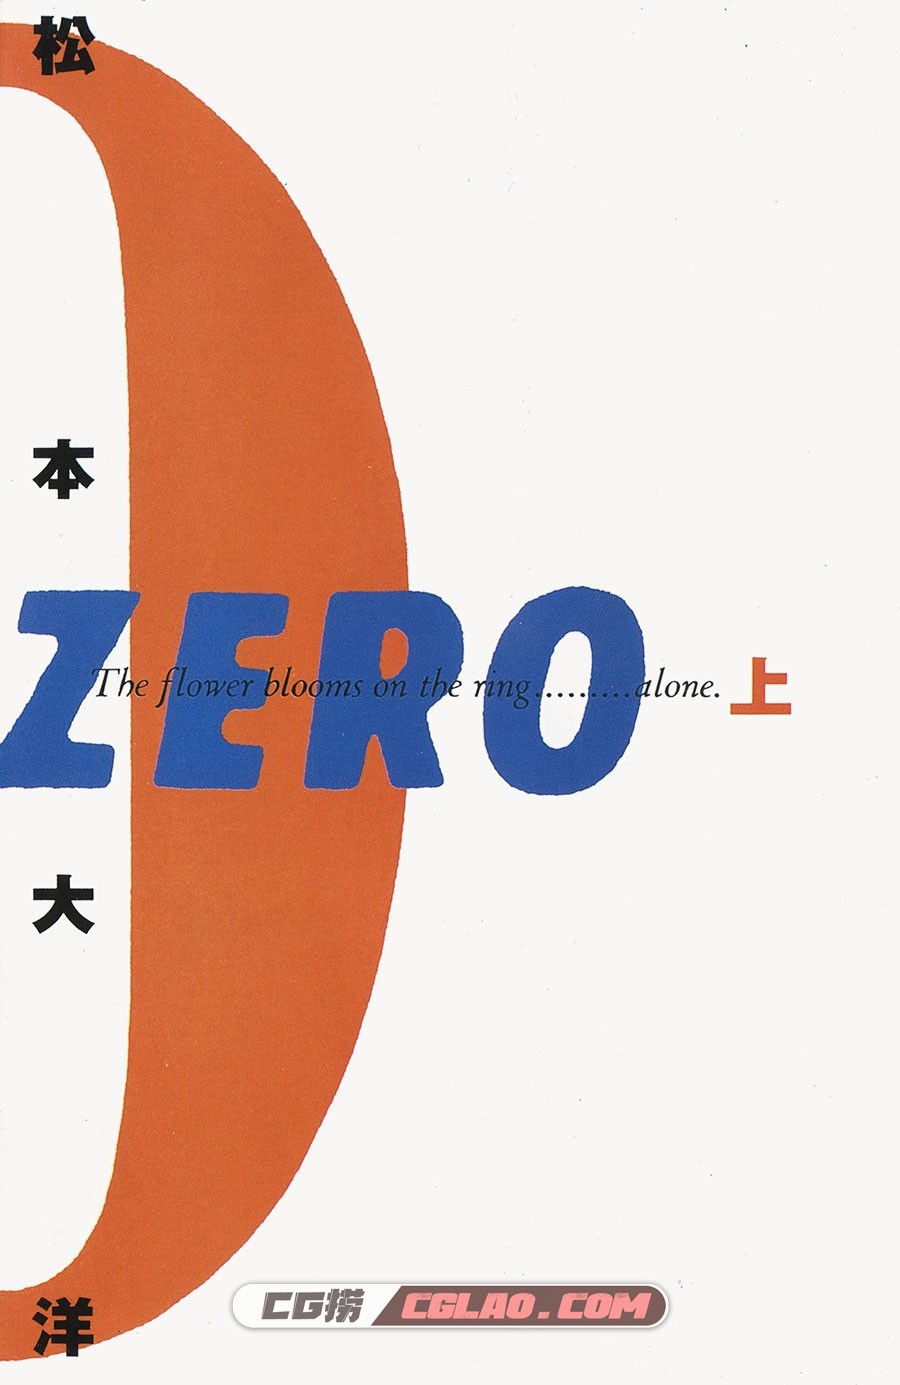 ZERO 松本大洋 1-2卷 漫画完结全集下载 百度网盘,_ZERO01-_0001.jpg